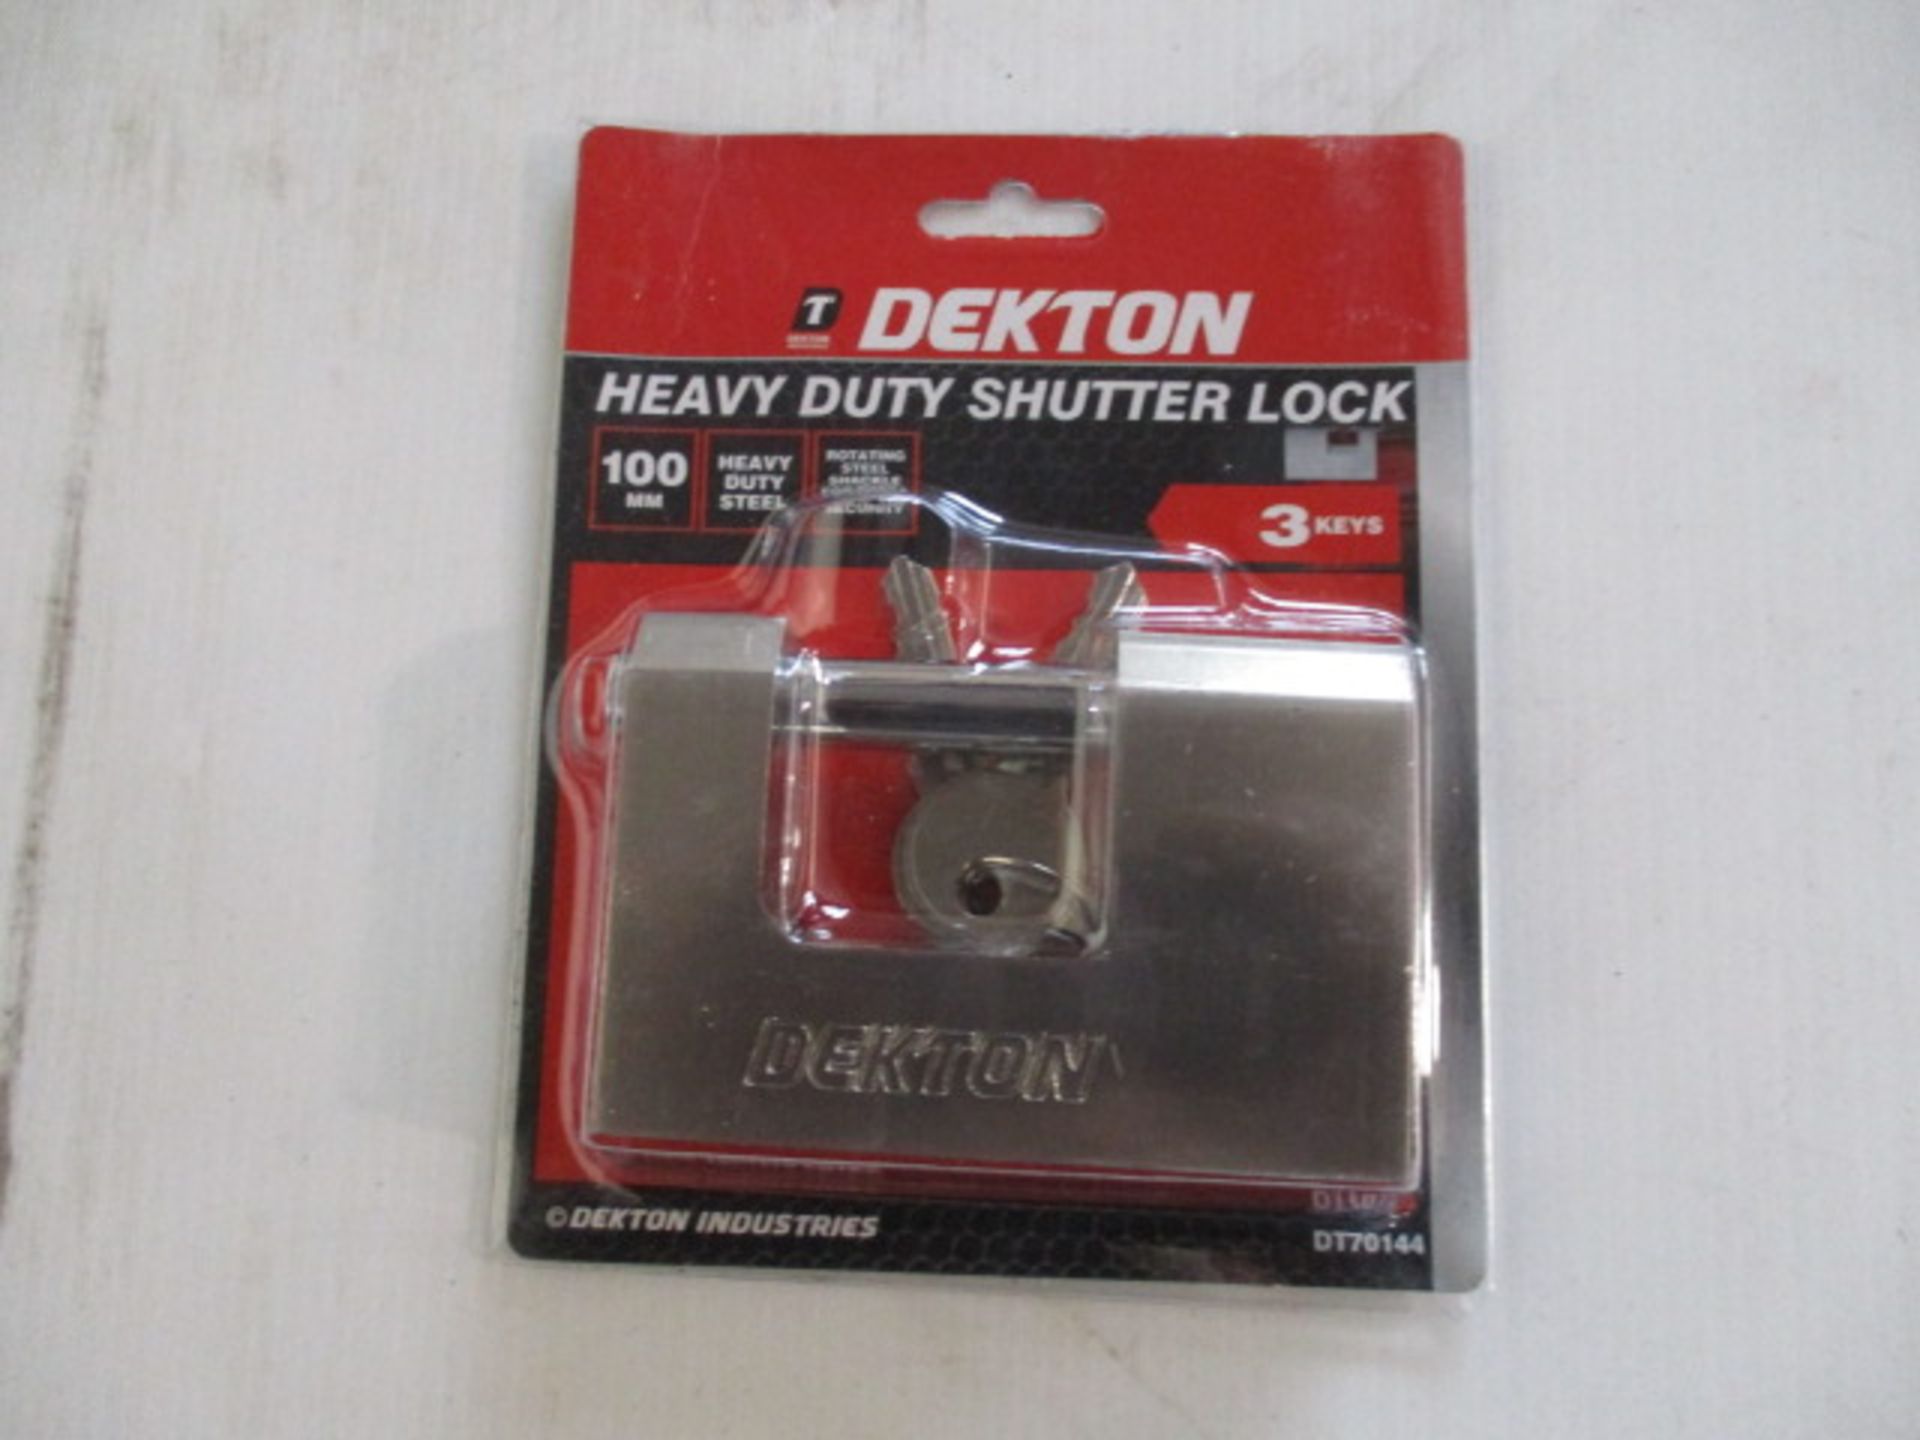 Dekton heavy duty shutter lock new and sealed with 3 keys